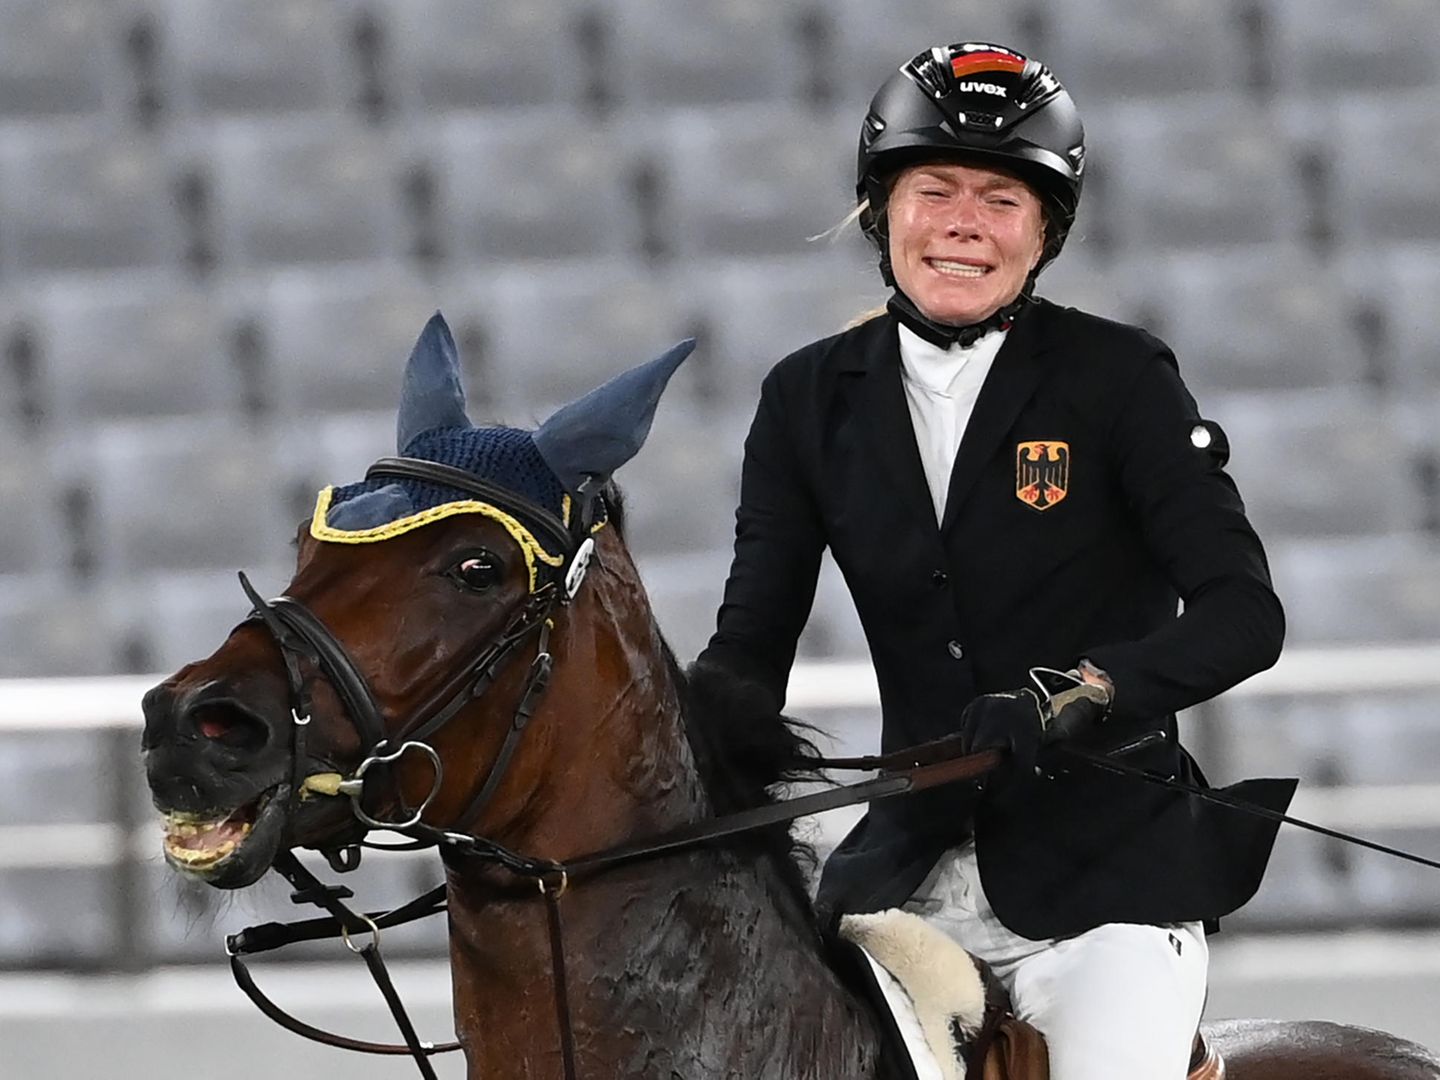 Nach Schlägen gegen Pferd Reitsport-Fachverband und DOSB fordern Regeländerungen STERN.de